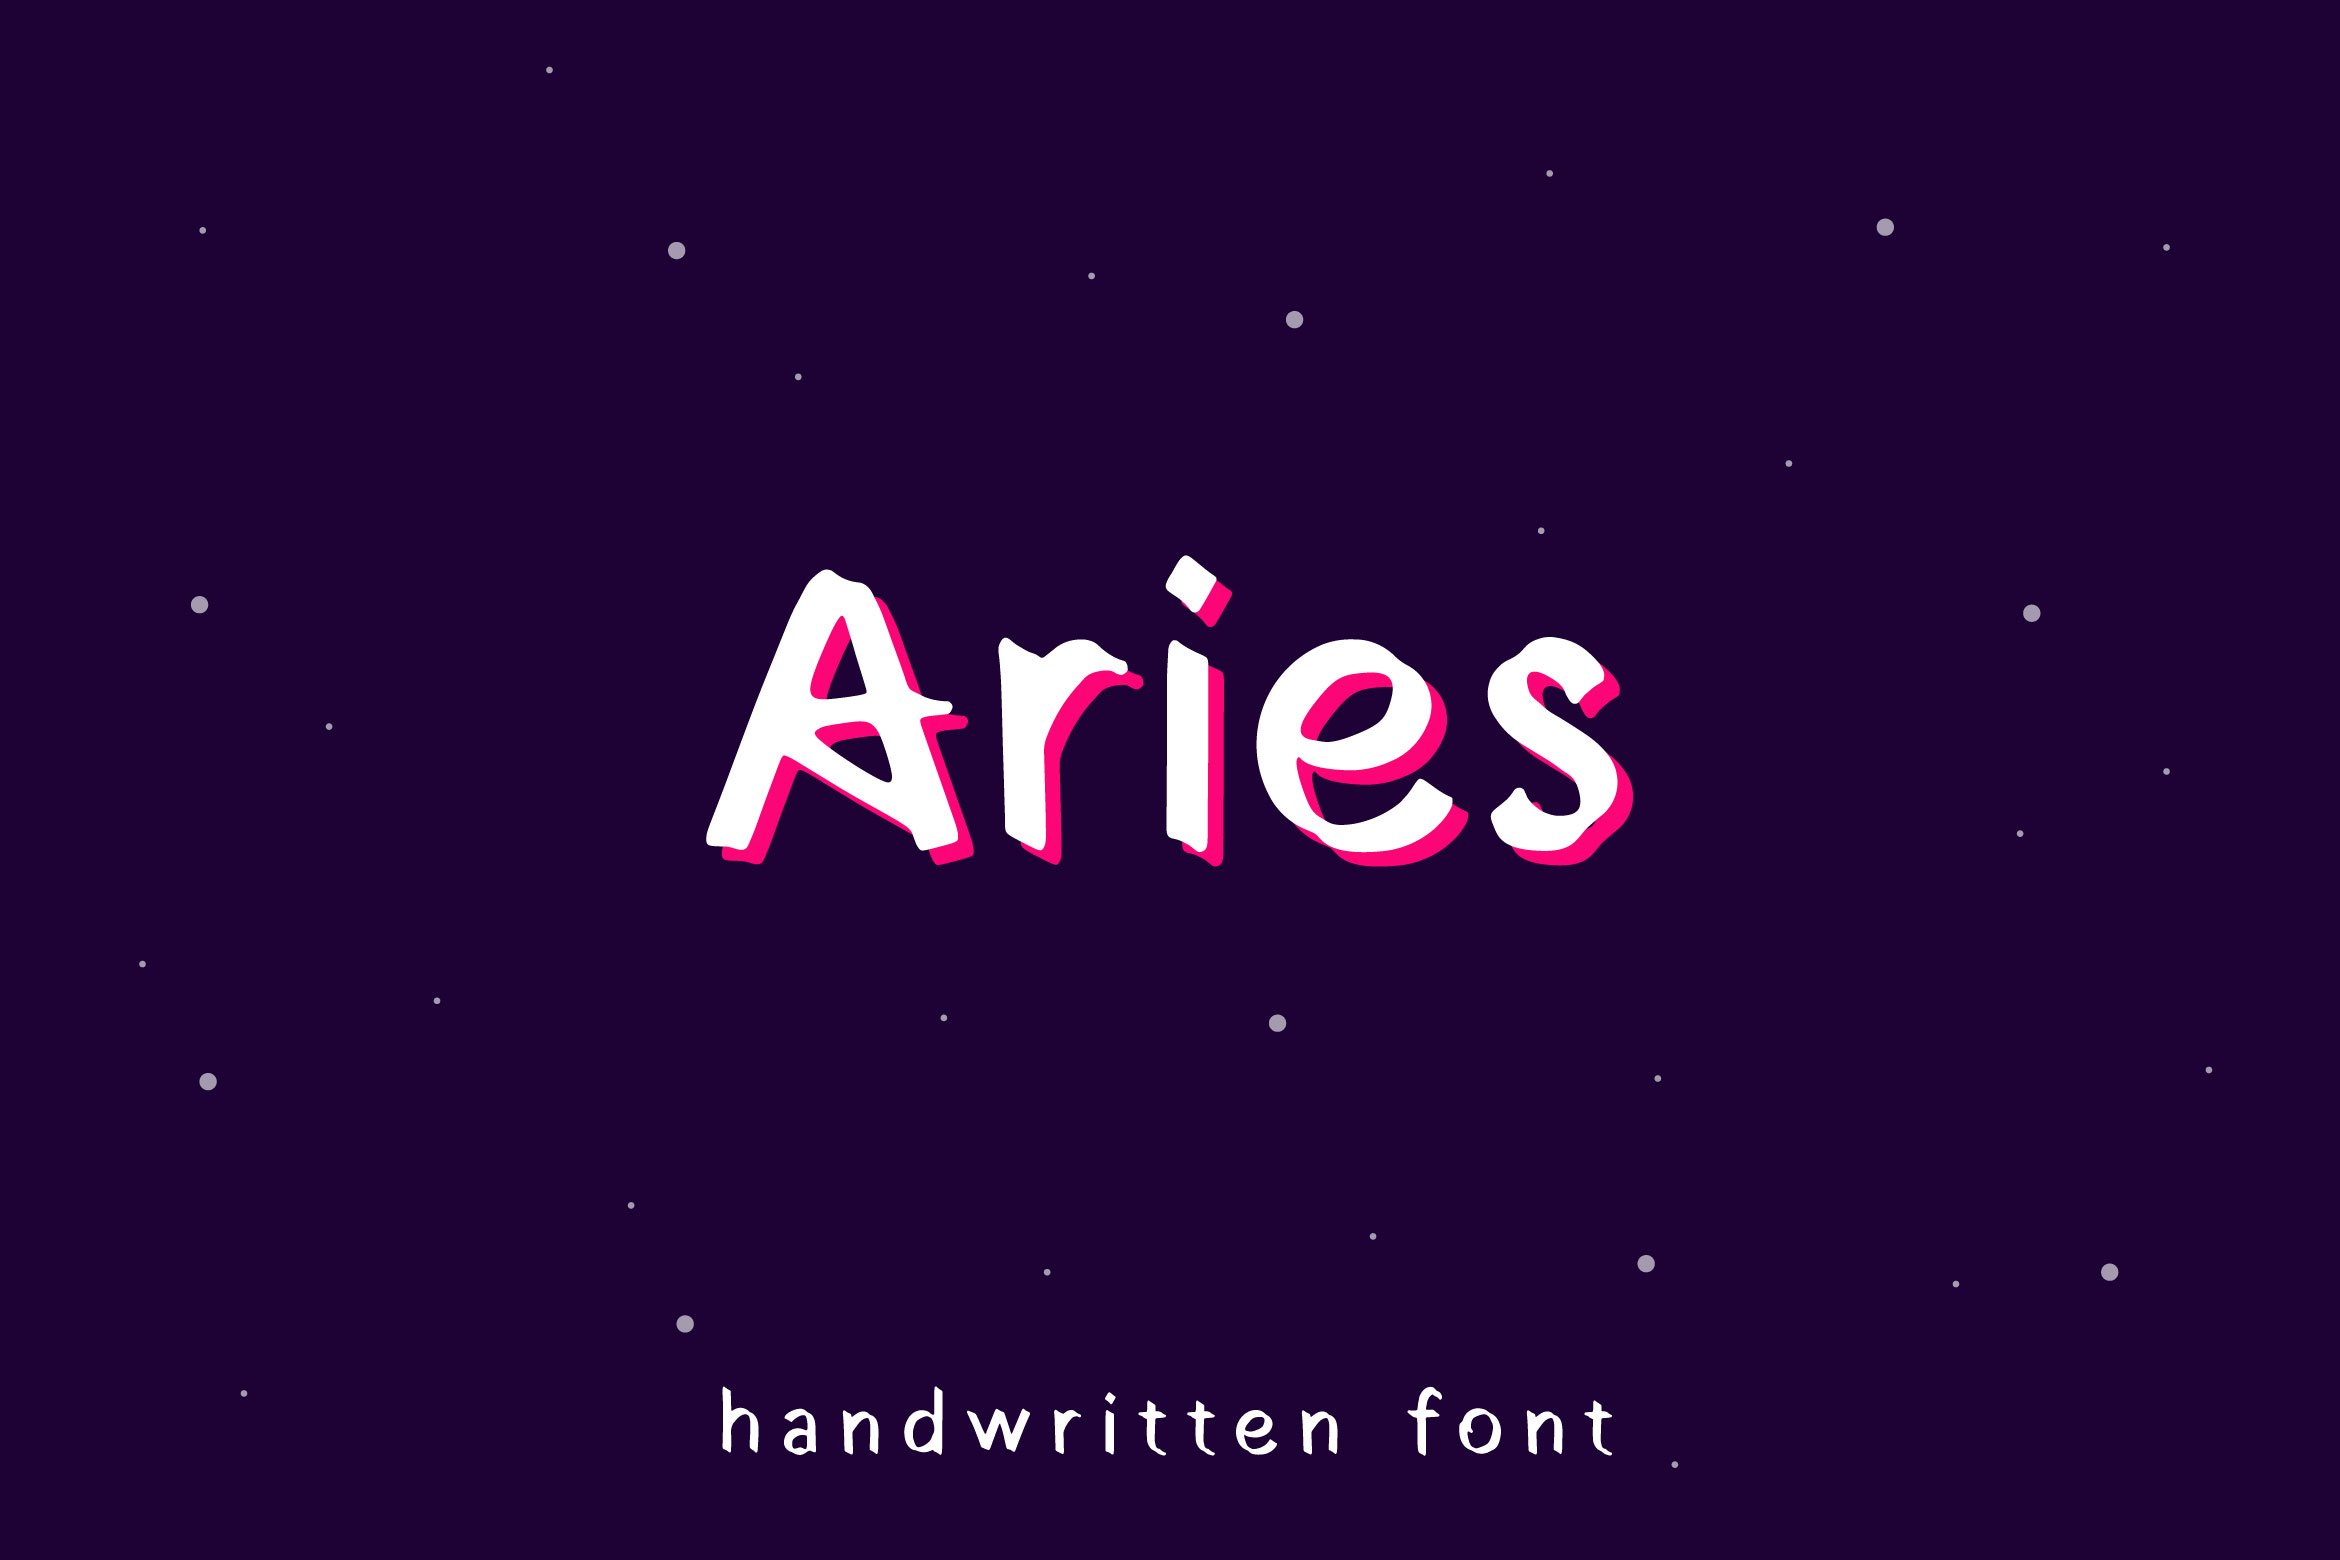 Aries - Sans Serif Font cover image.